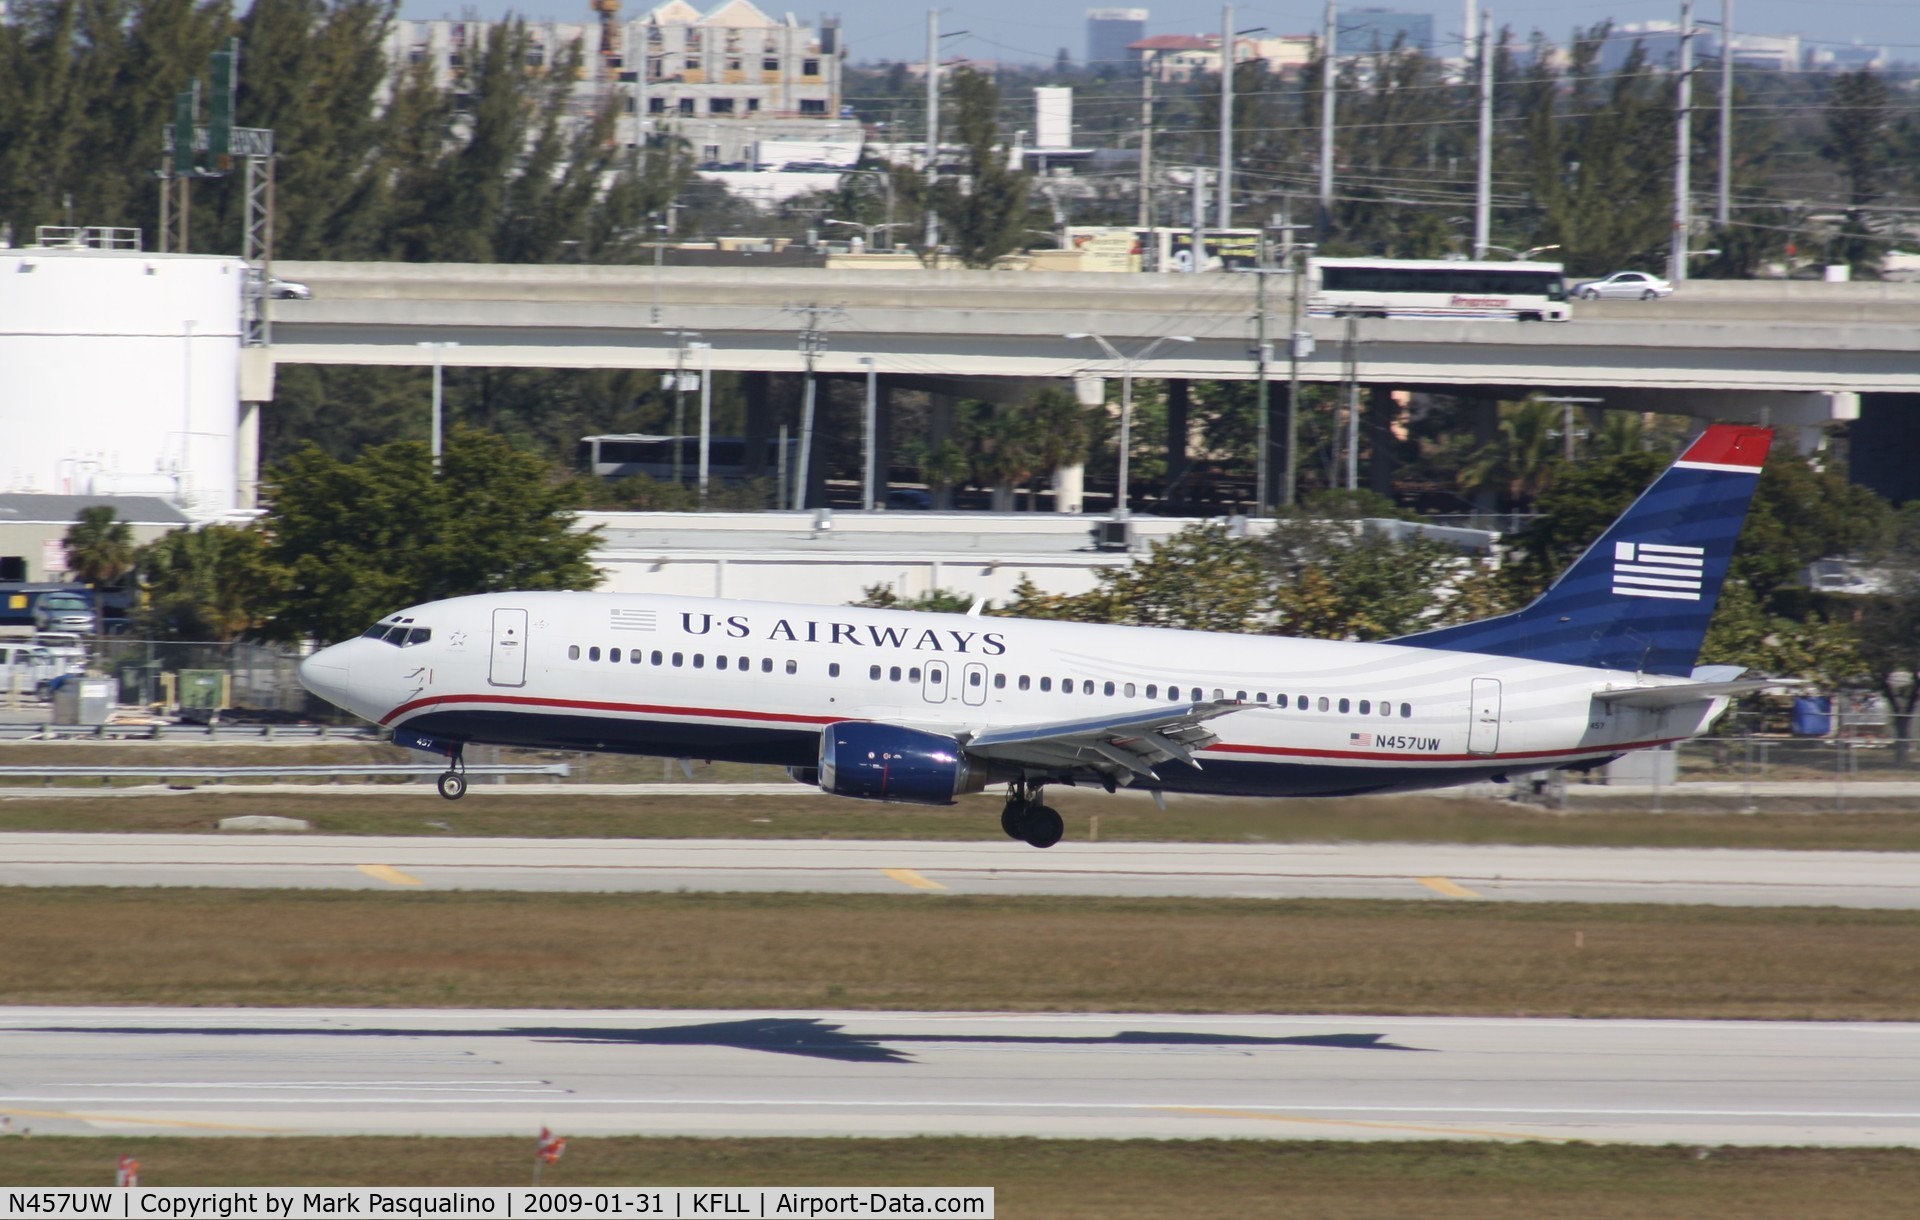 N457UW, 1991 Boeing 737-4B7 C/N 25021, Boeing 737-400